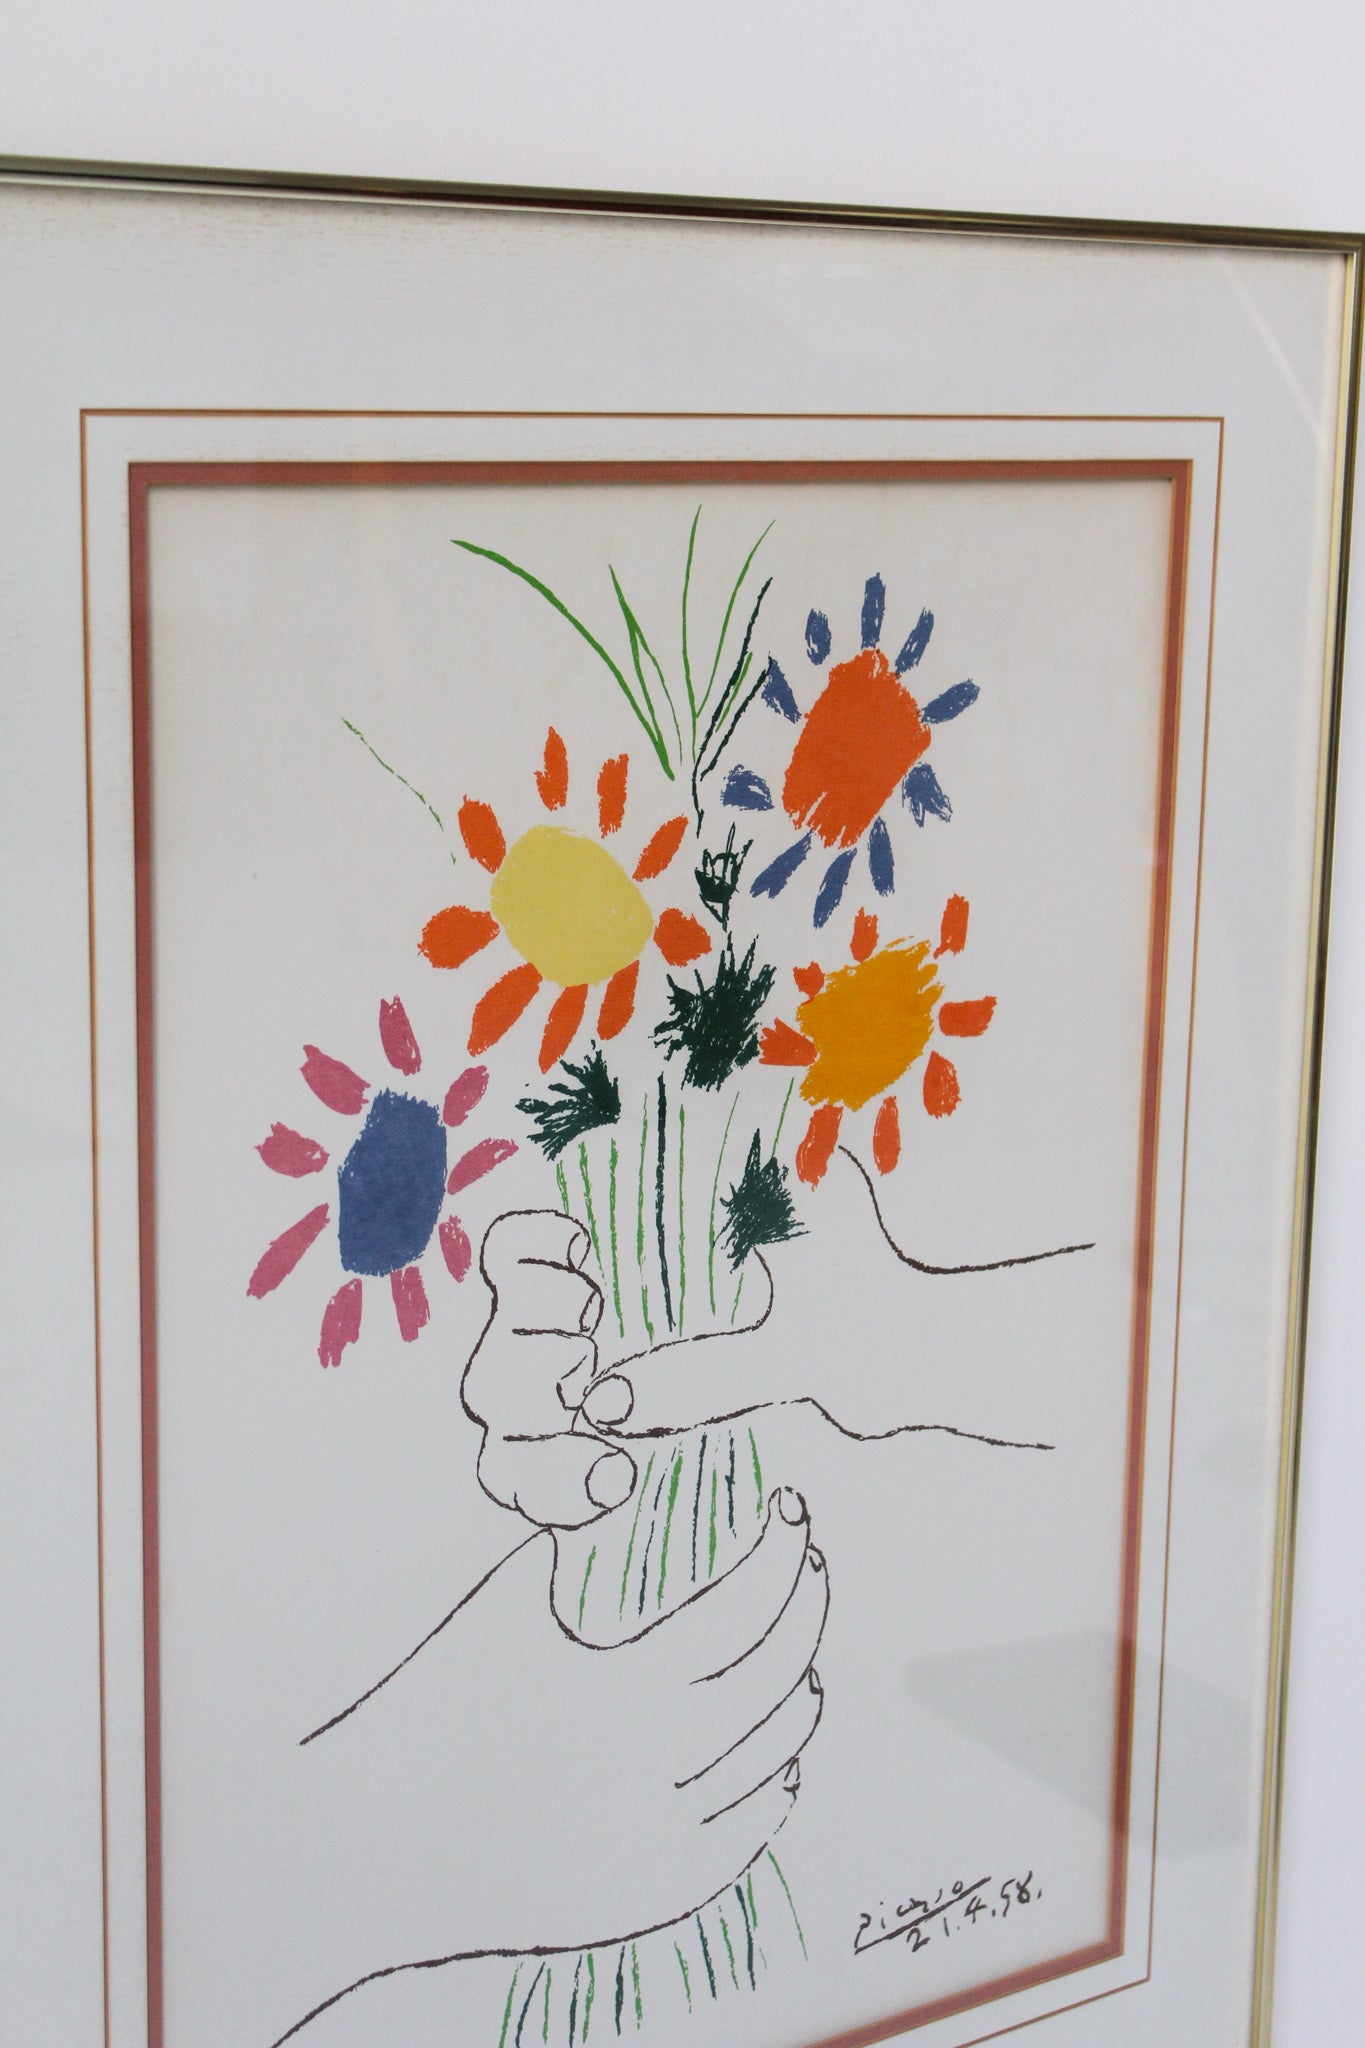 Pablo Picasso "Bouquet of Peace" Print